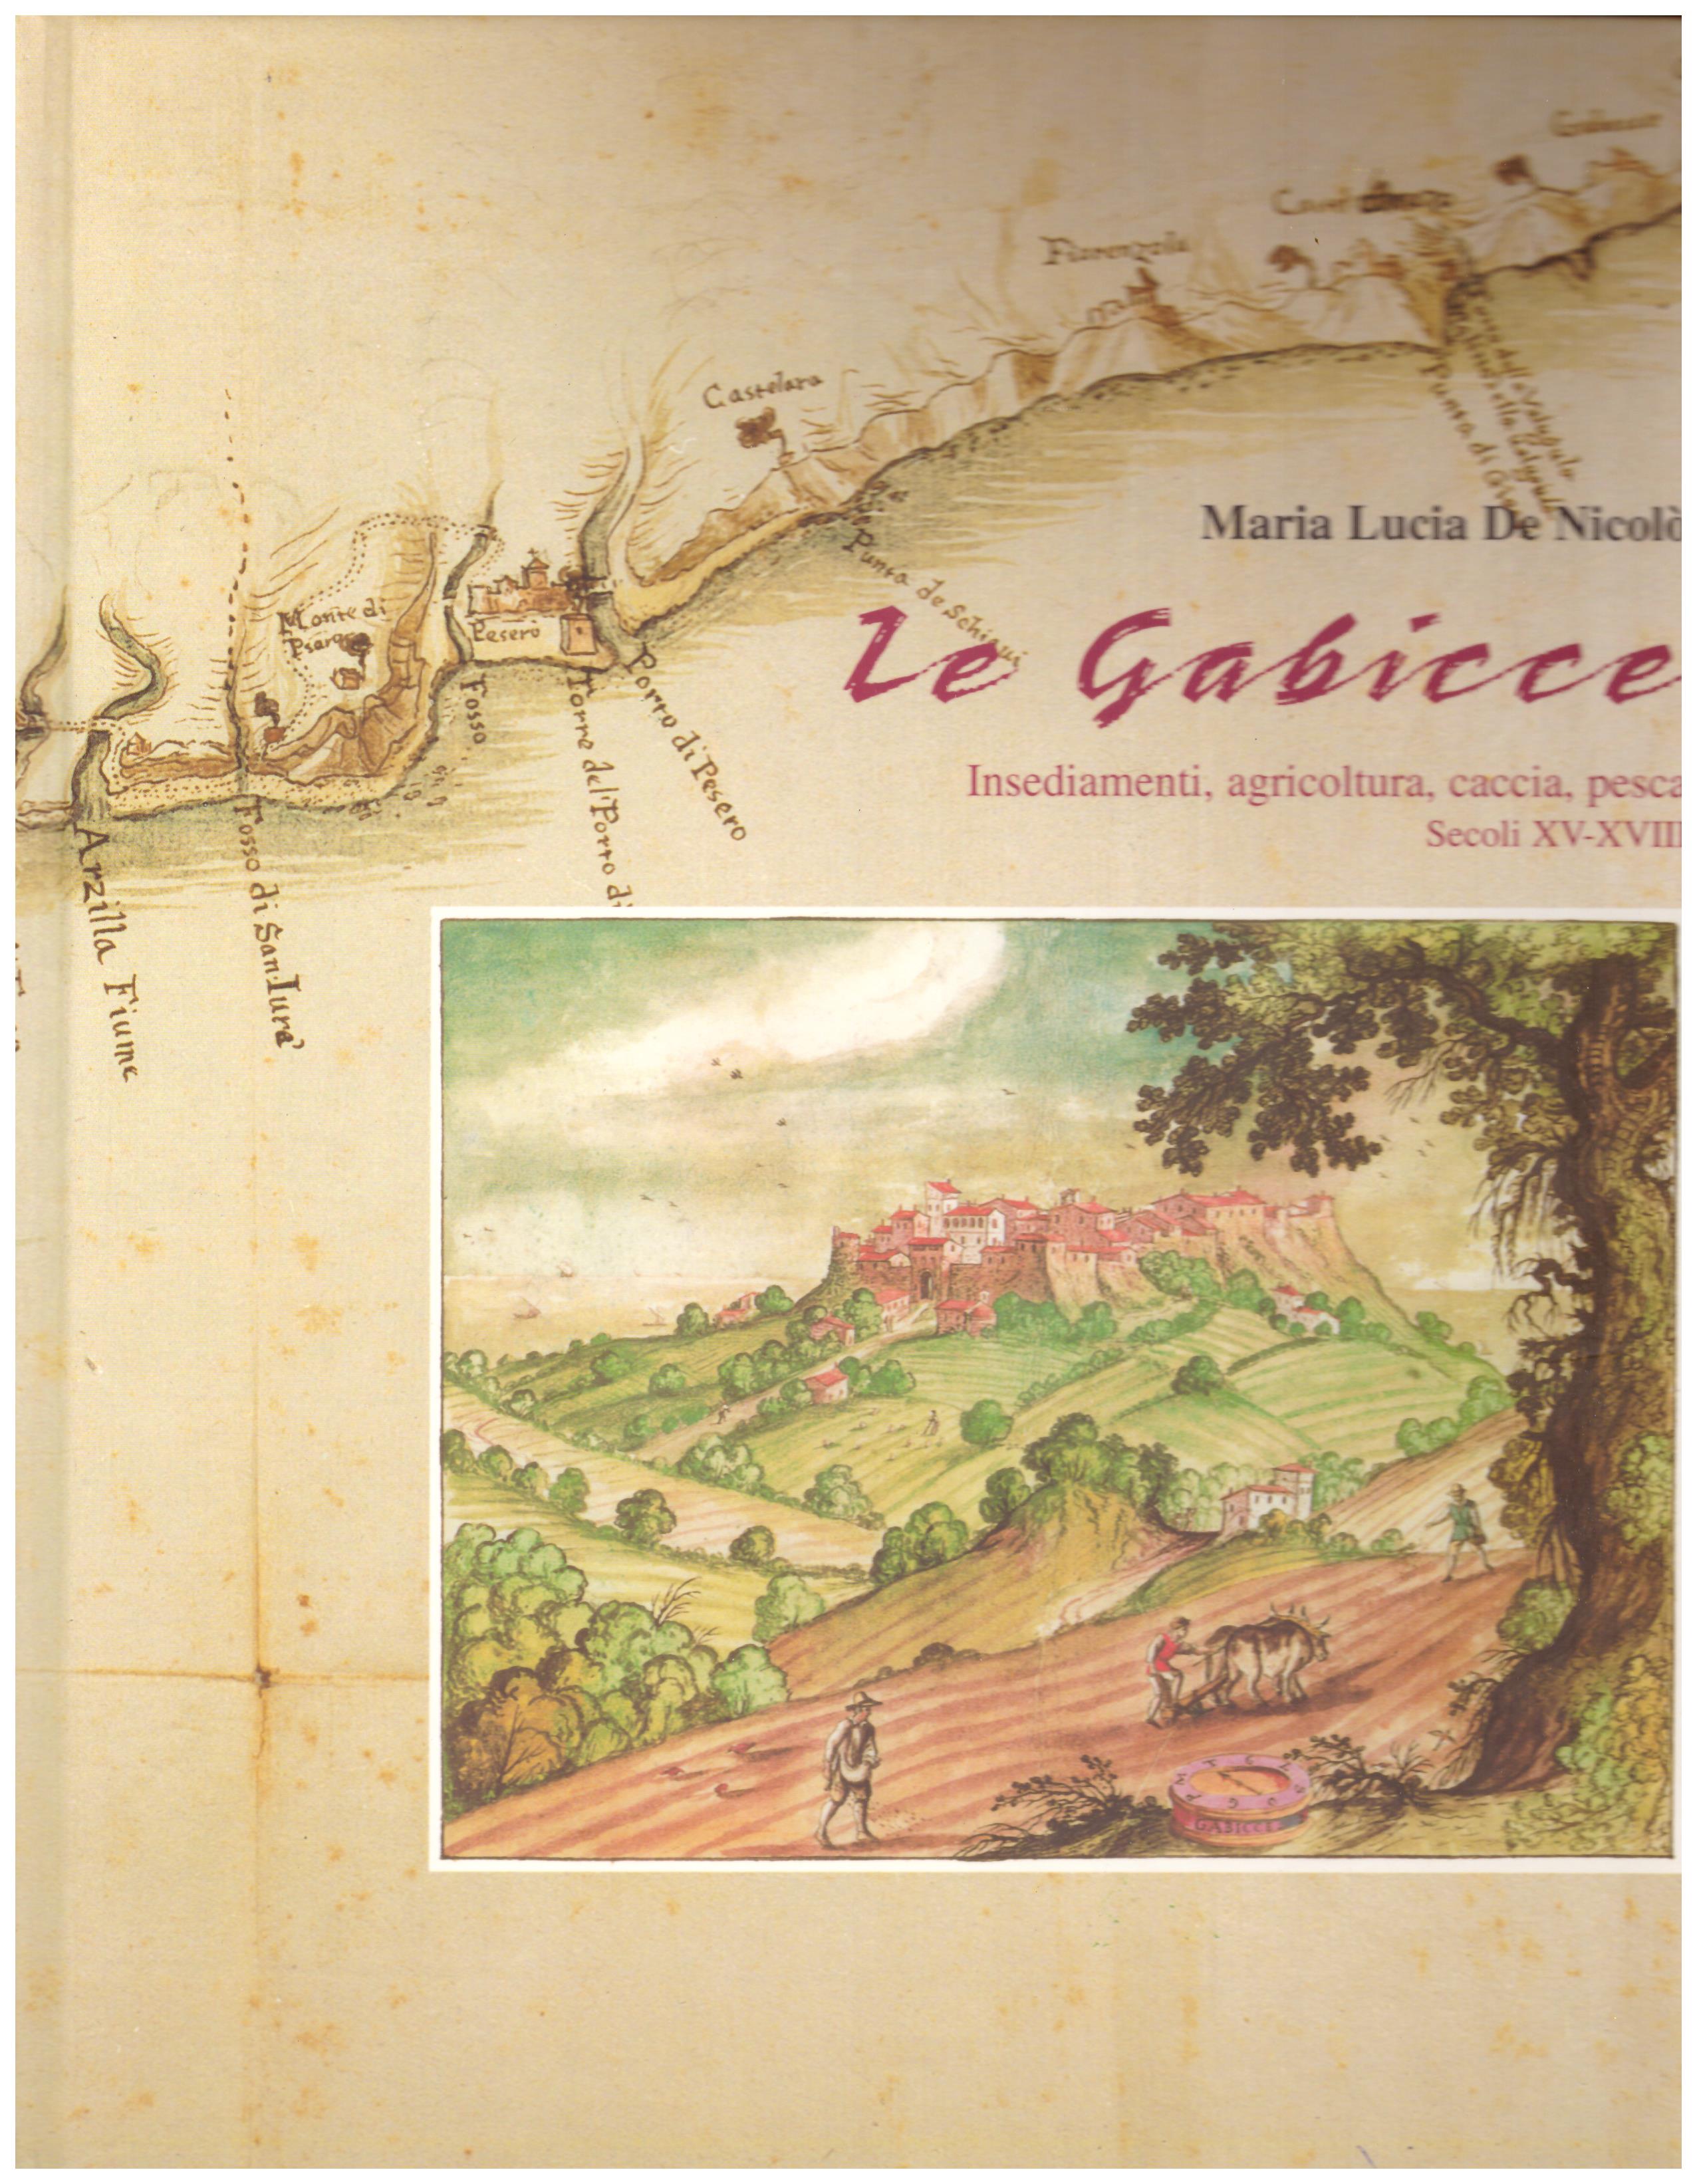 Titolo: Le Gabicce Autore : Maria Lucia De Nicolò Editore: poligrafica editore villa Verucchio, 2009